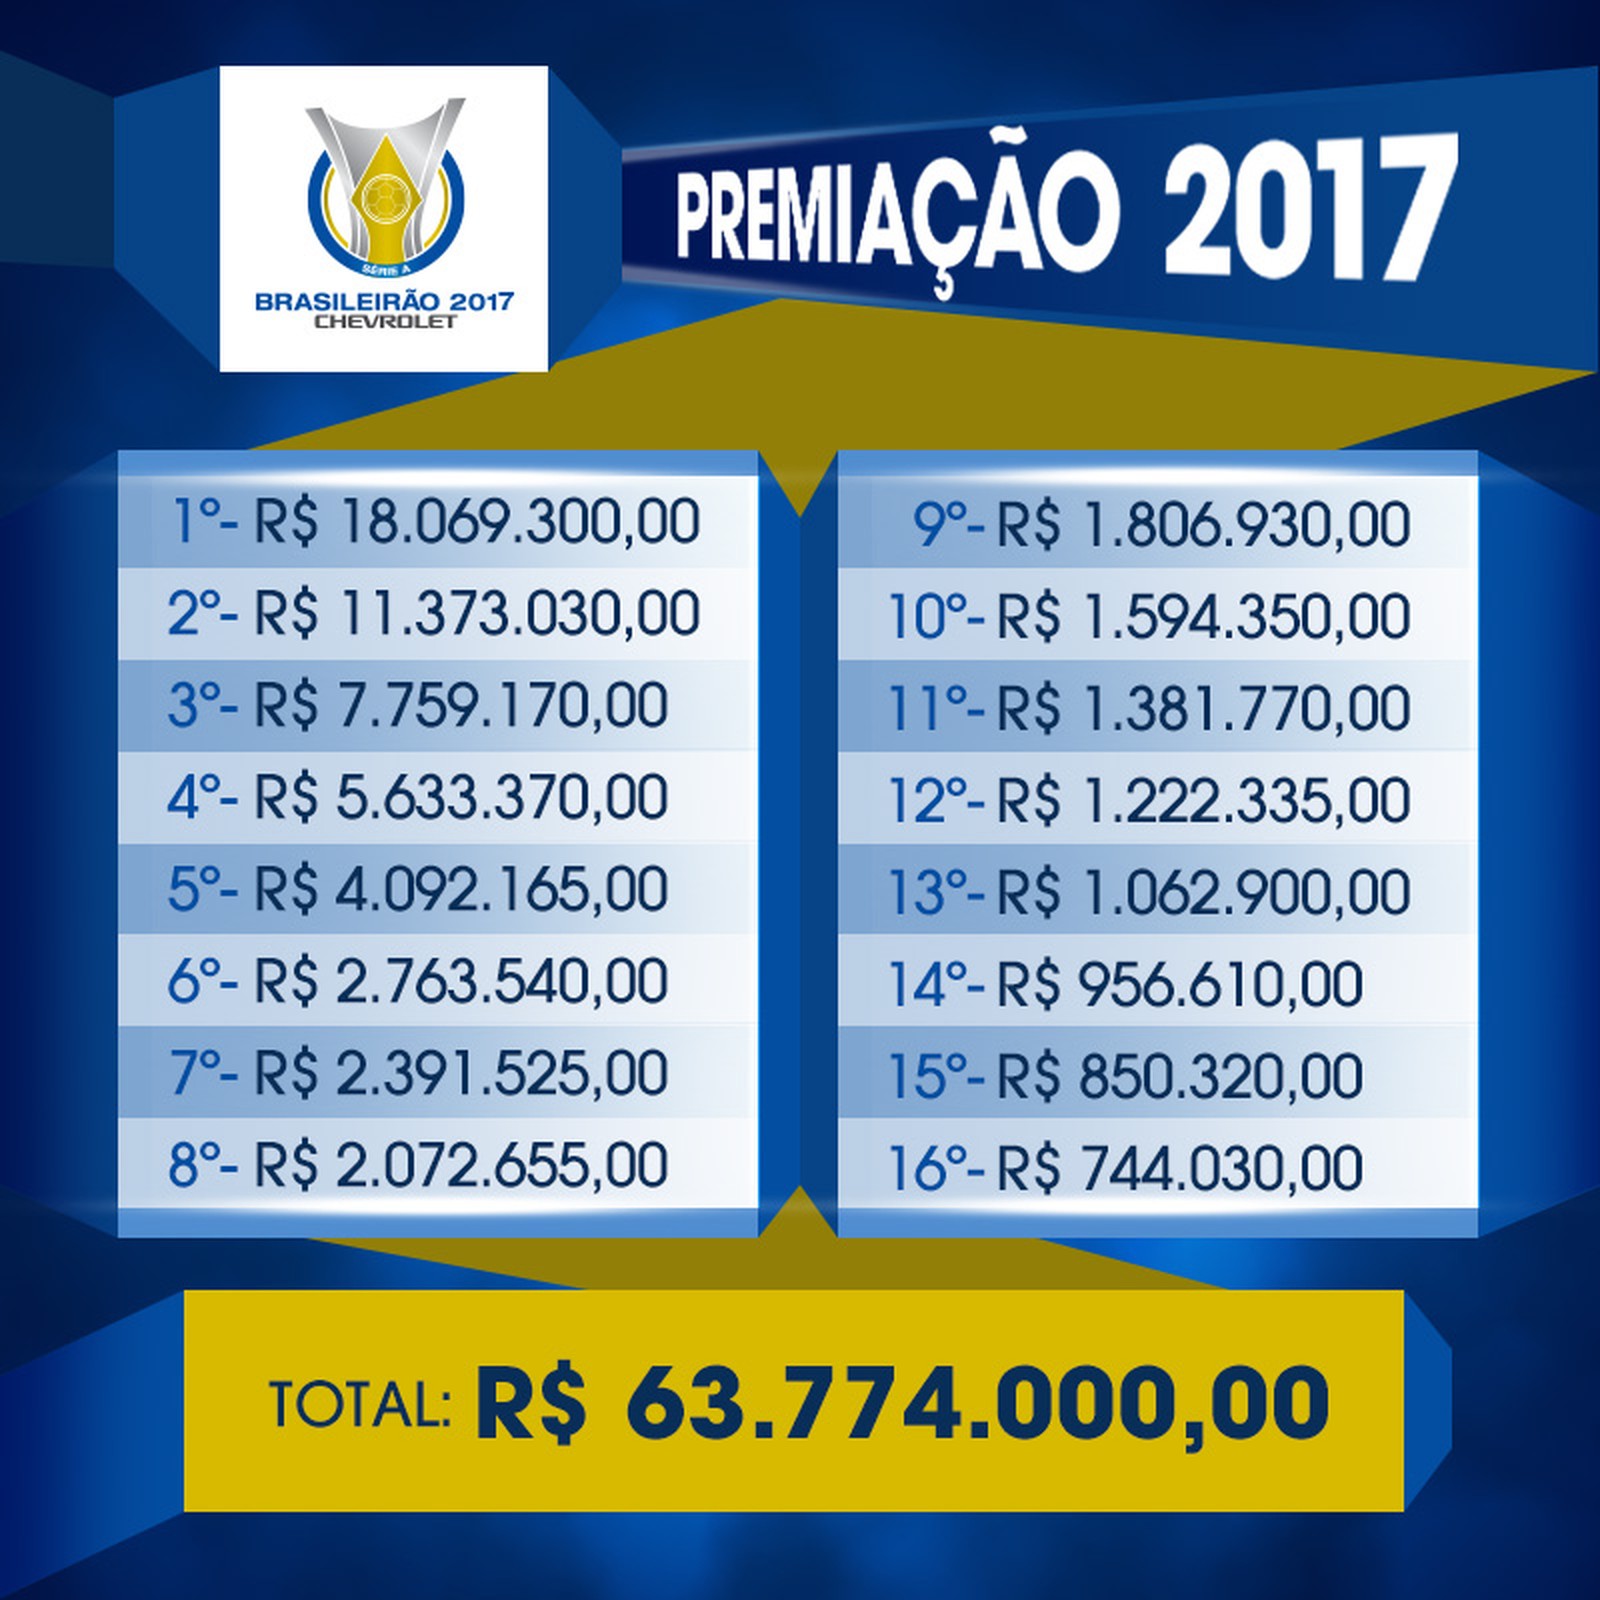 Premiação do Campeonato Brasileiro 2017